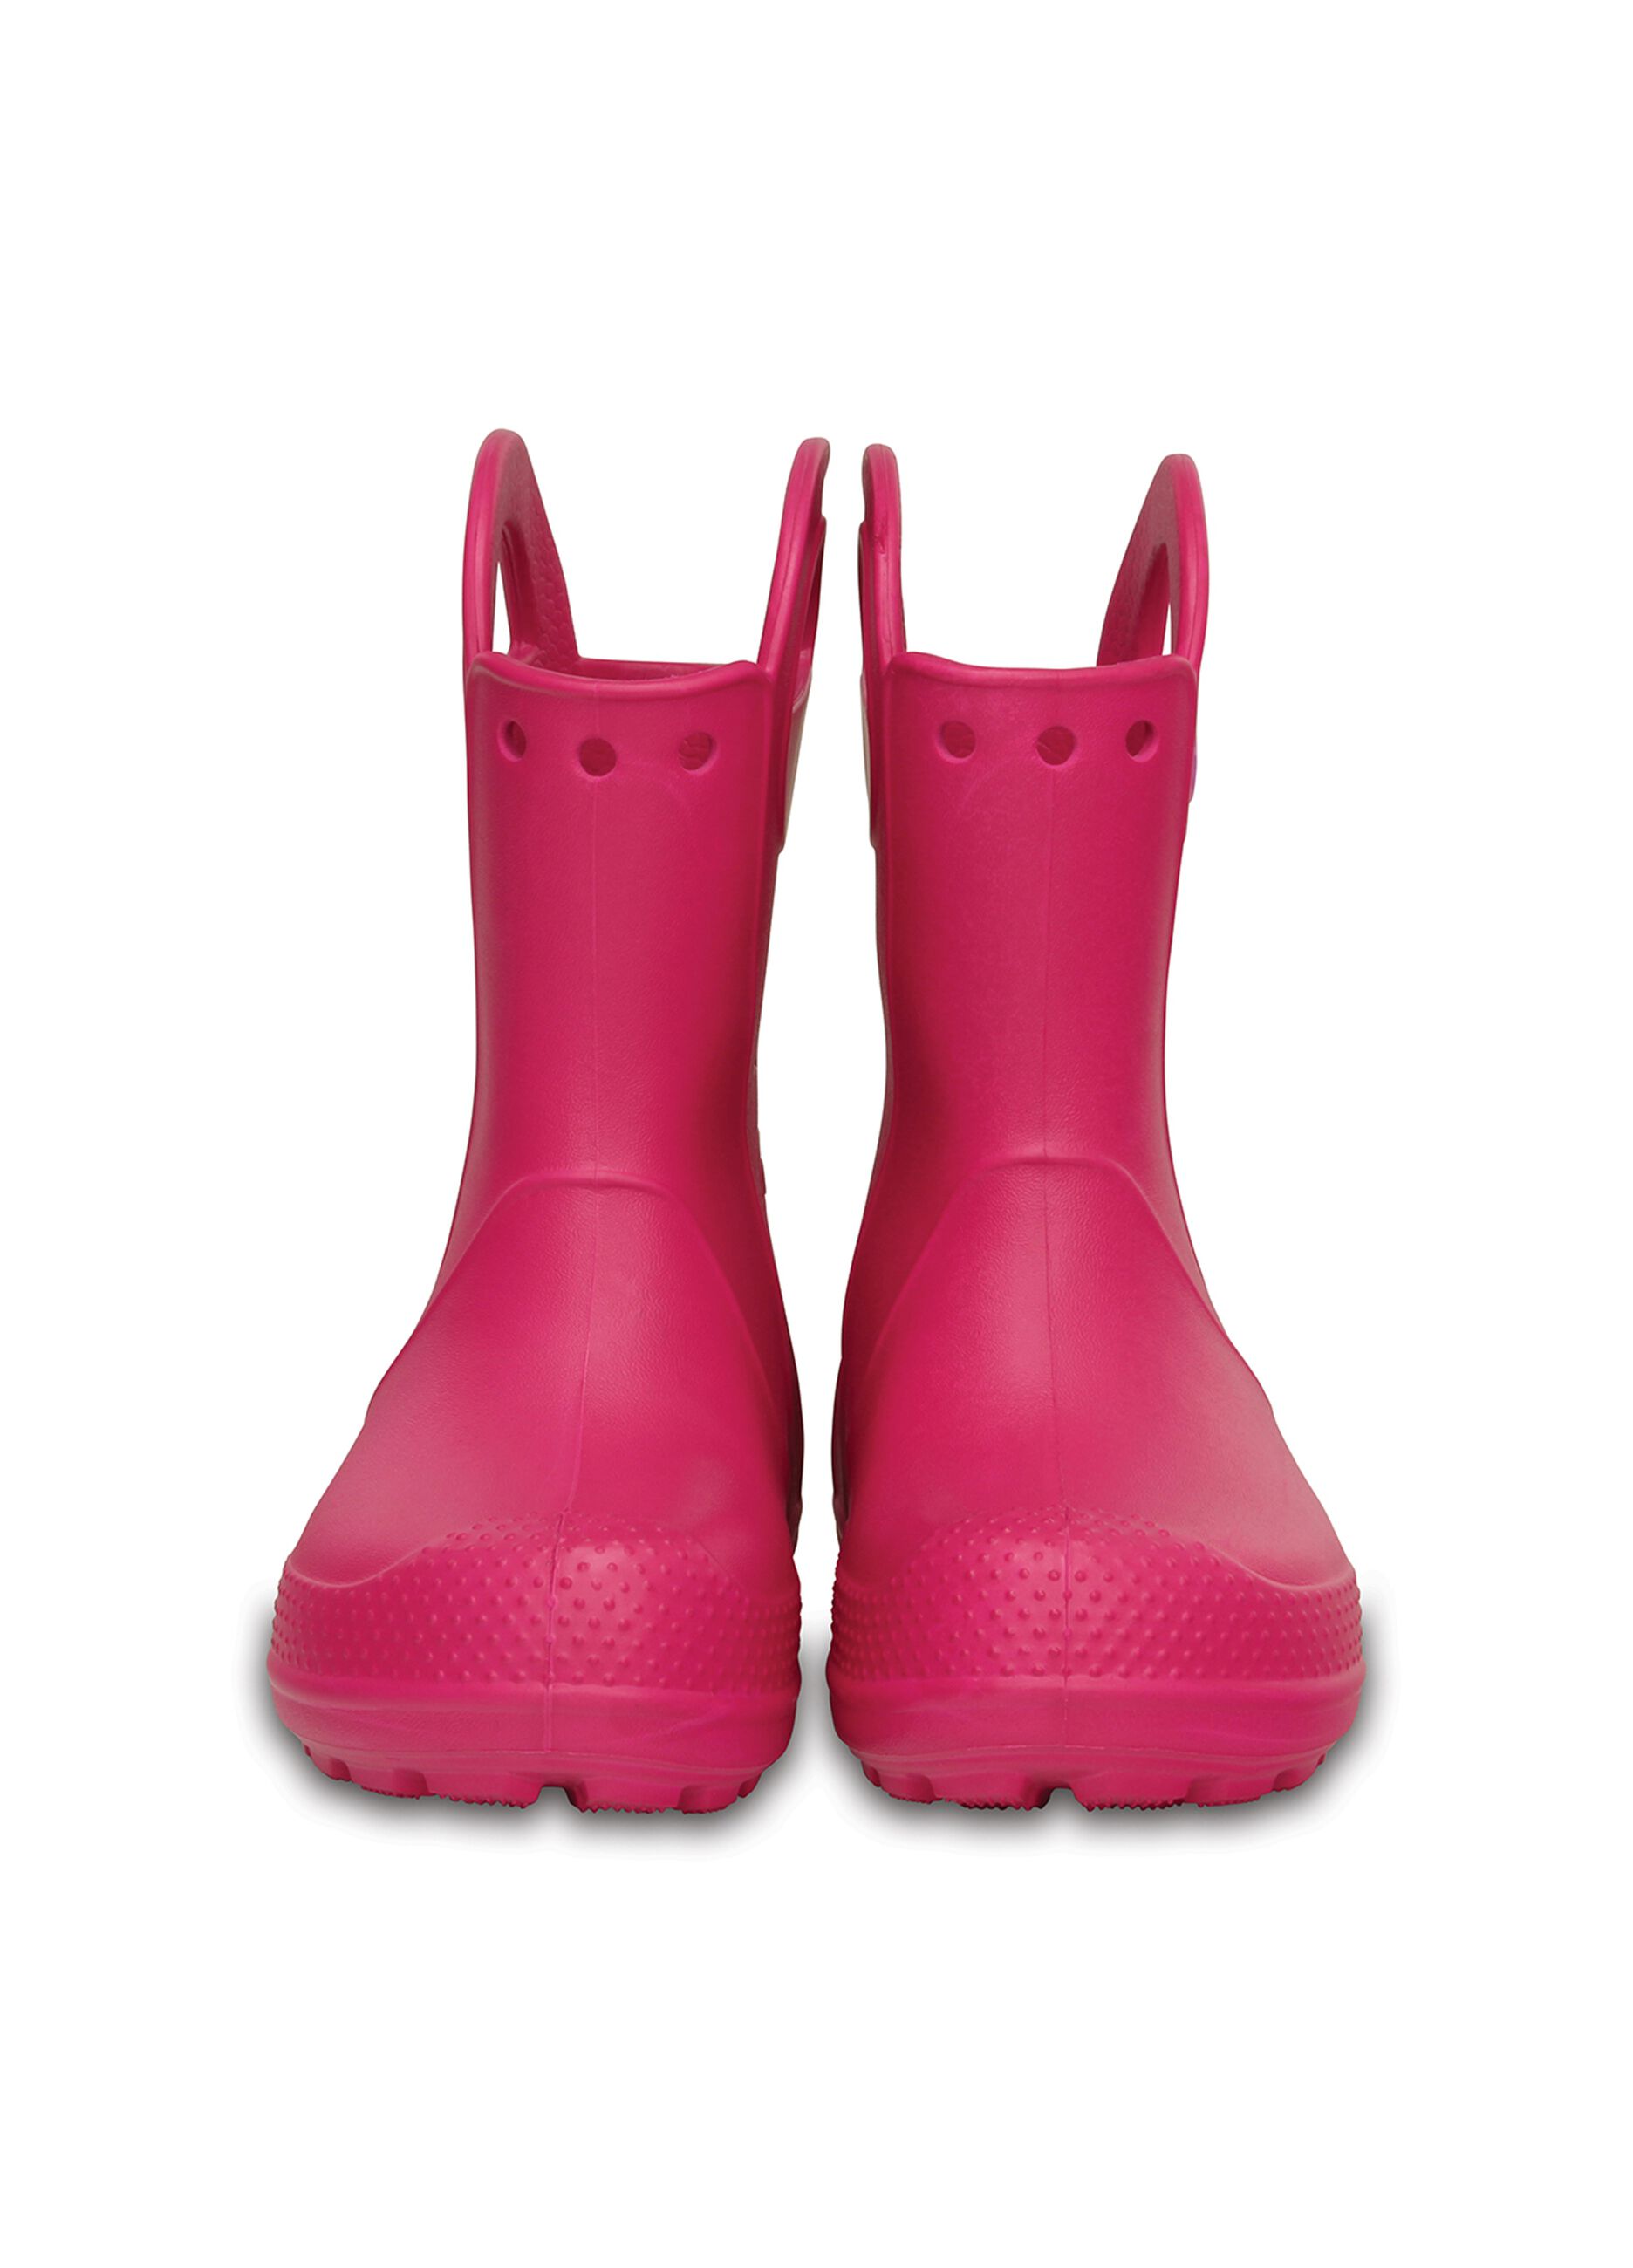 Crocs rain boot